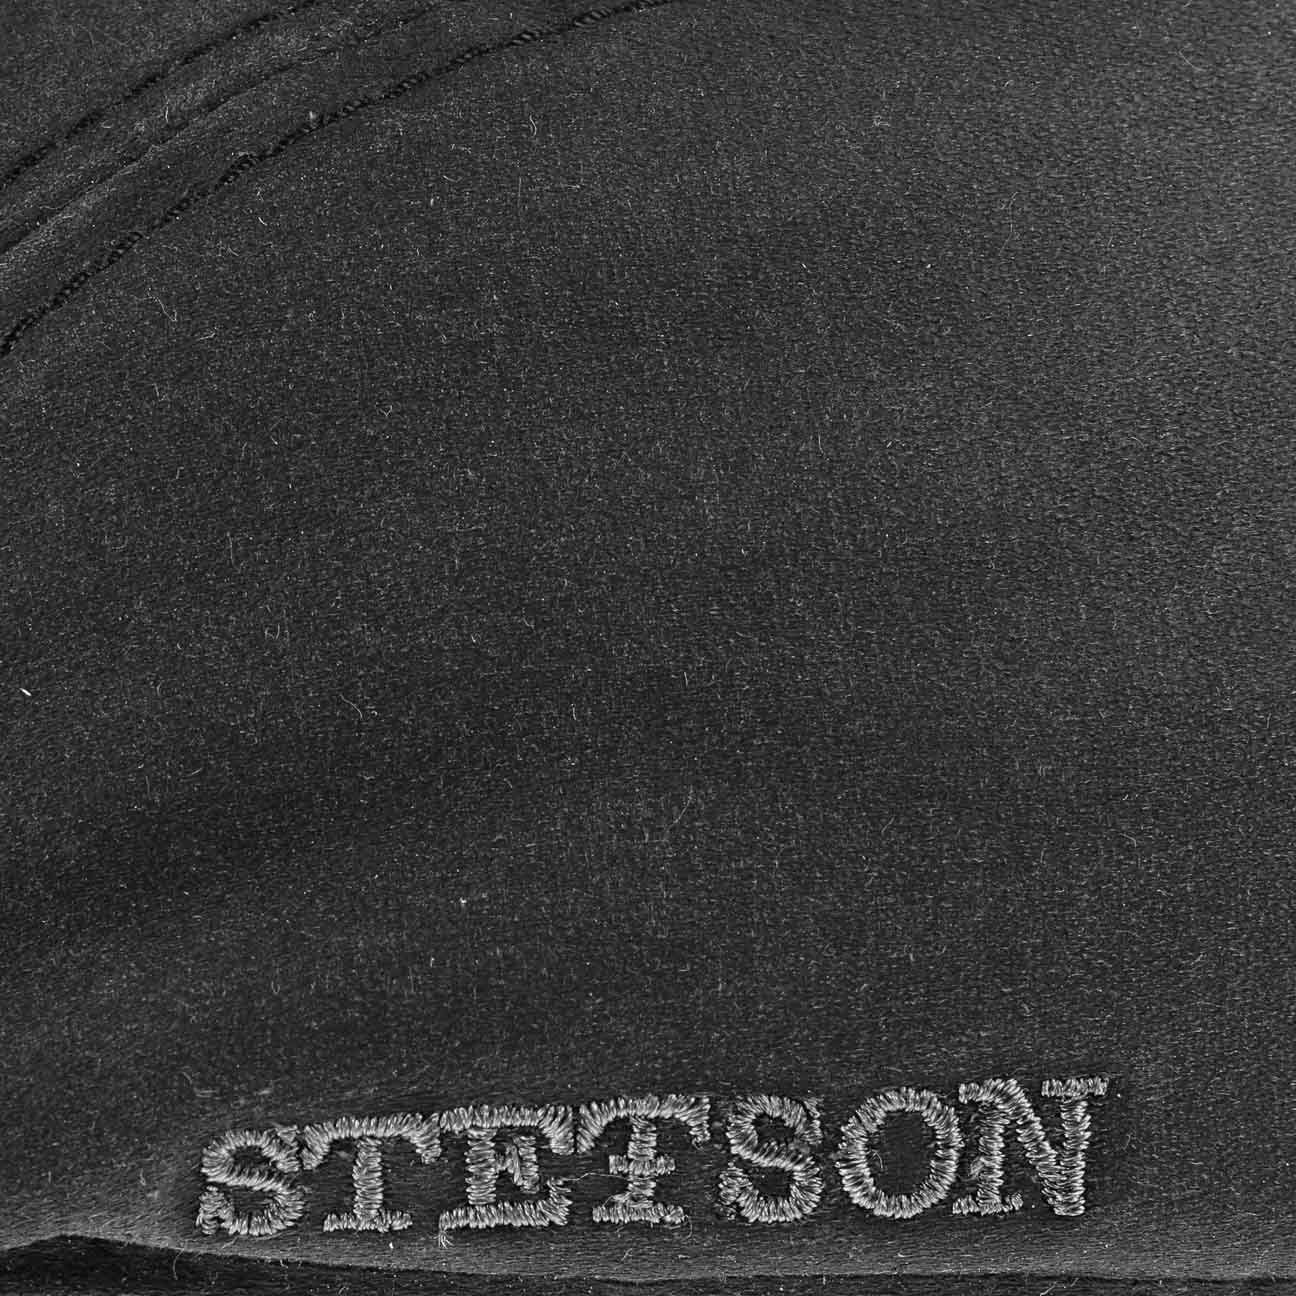 Stetson Flat Cap (1-St) Flatcap schwarz mit Schirm